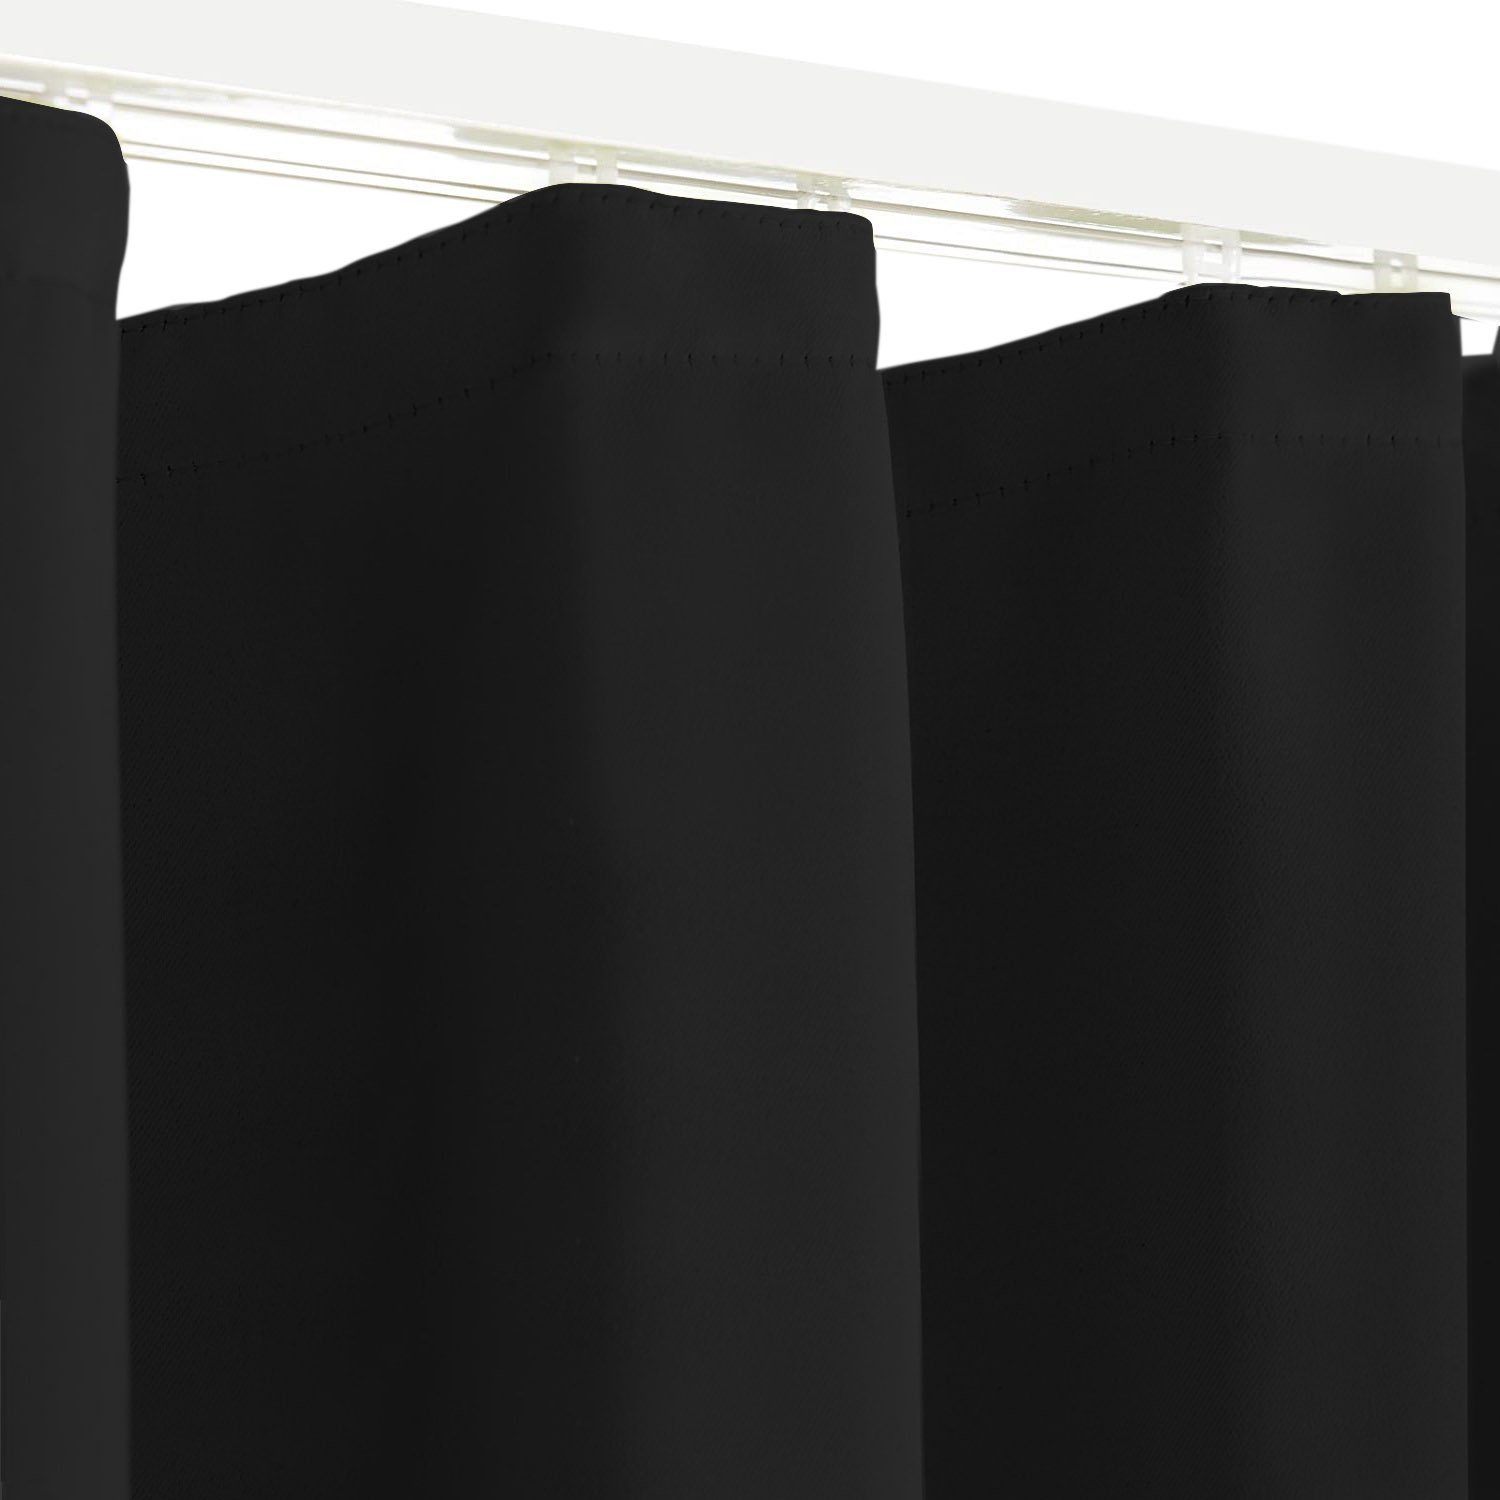 Verdunkelungsvorhang schwarz, 245cm, Modell Höhe Sopran, oder Blackout blickdicht, in Thermovorhang, Verdunkelungsschal 175cm Farbe Clever-Kauf-24